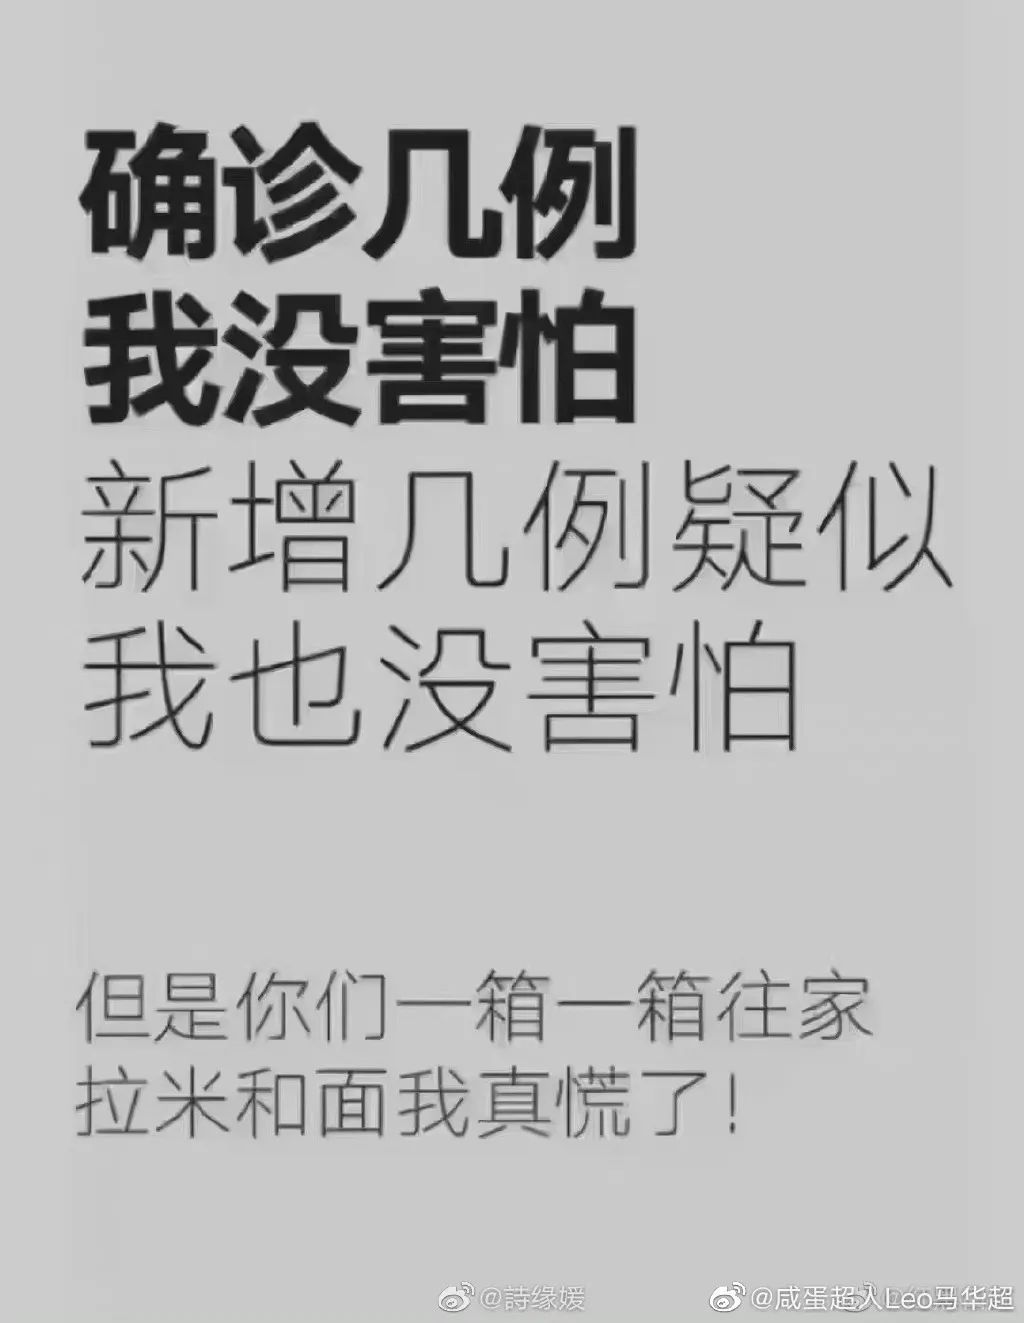 “气氛组”刷屏，北京居民需要囤货吗？